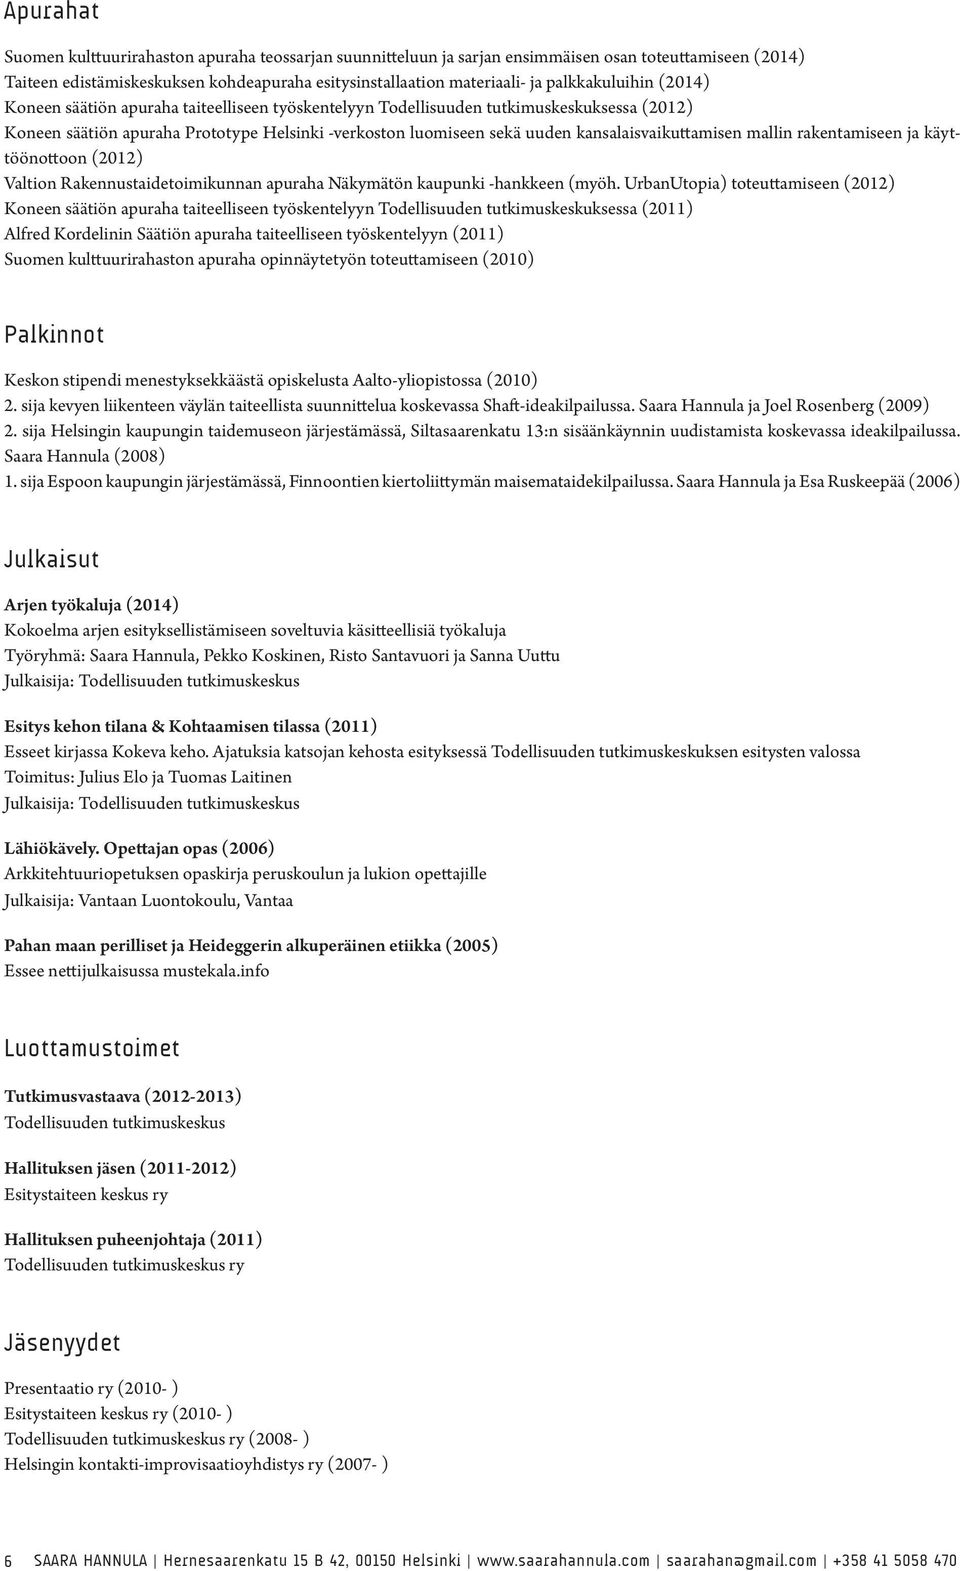 kansalaisvaikuttamisen mallin rakentamiseen ja käyttöönottoon (2012) Valtion Rakennustaidetoimikunnan apuraha Näkymätön kaupunki -hankkeen (myöh.